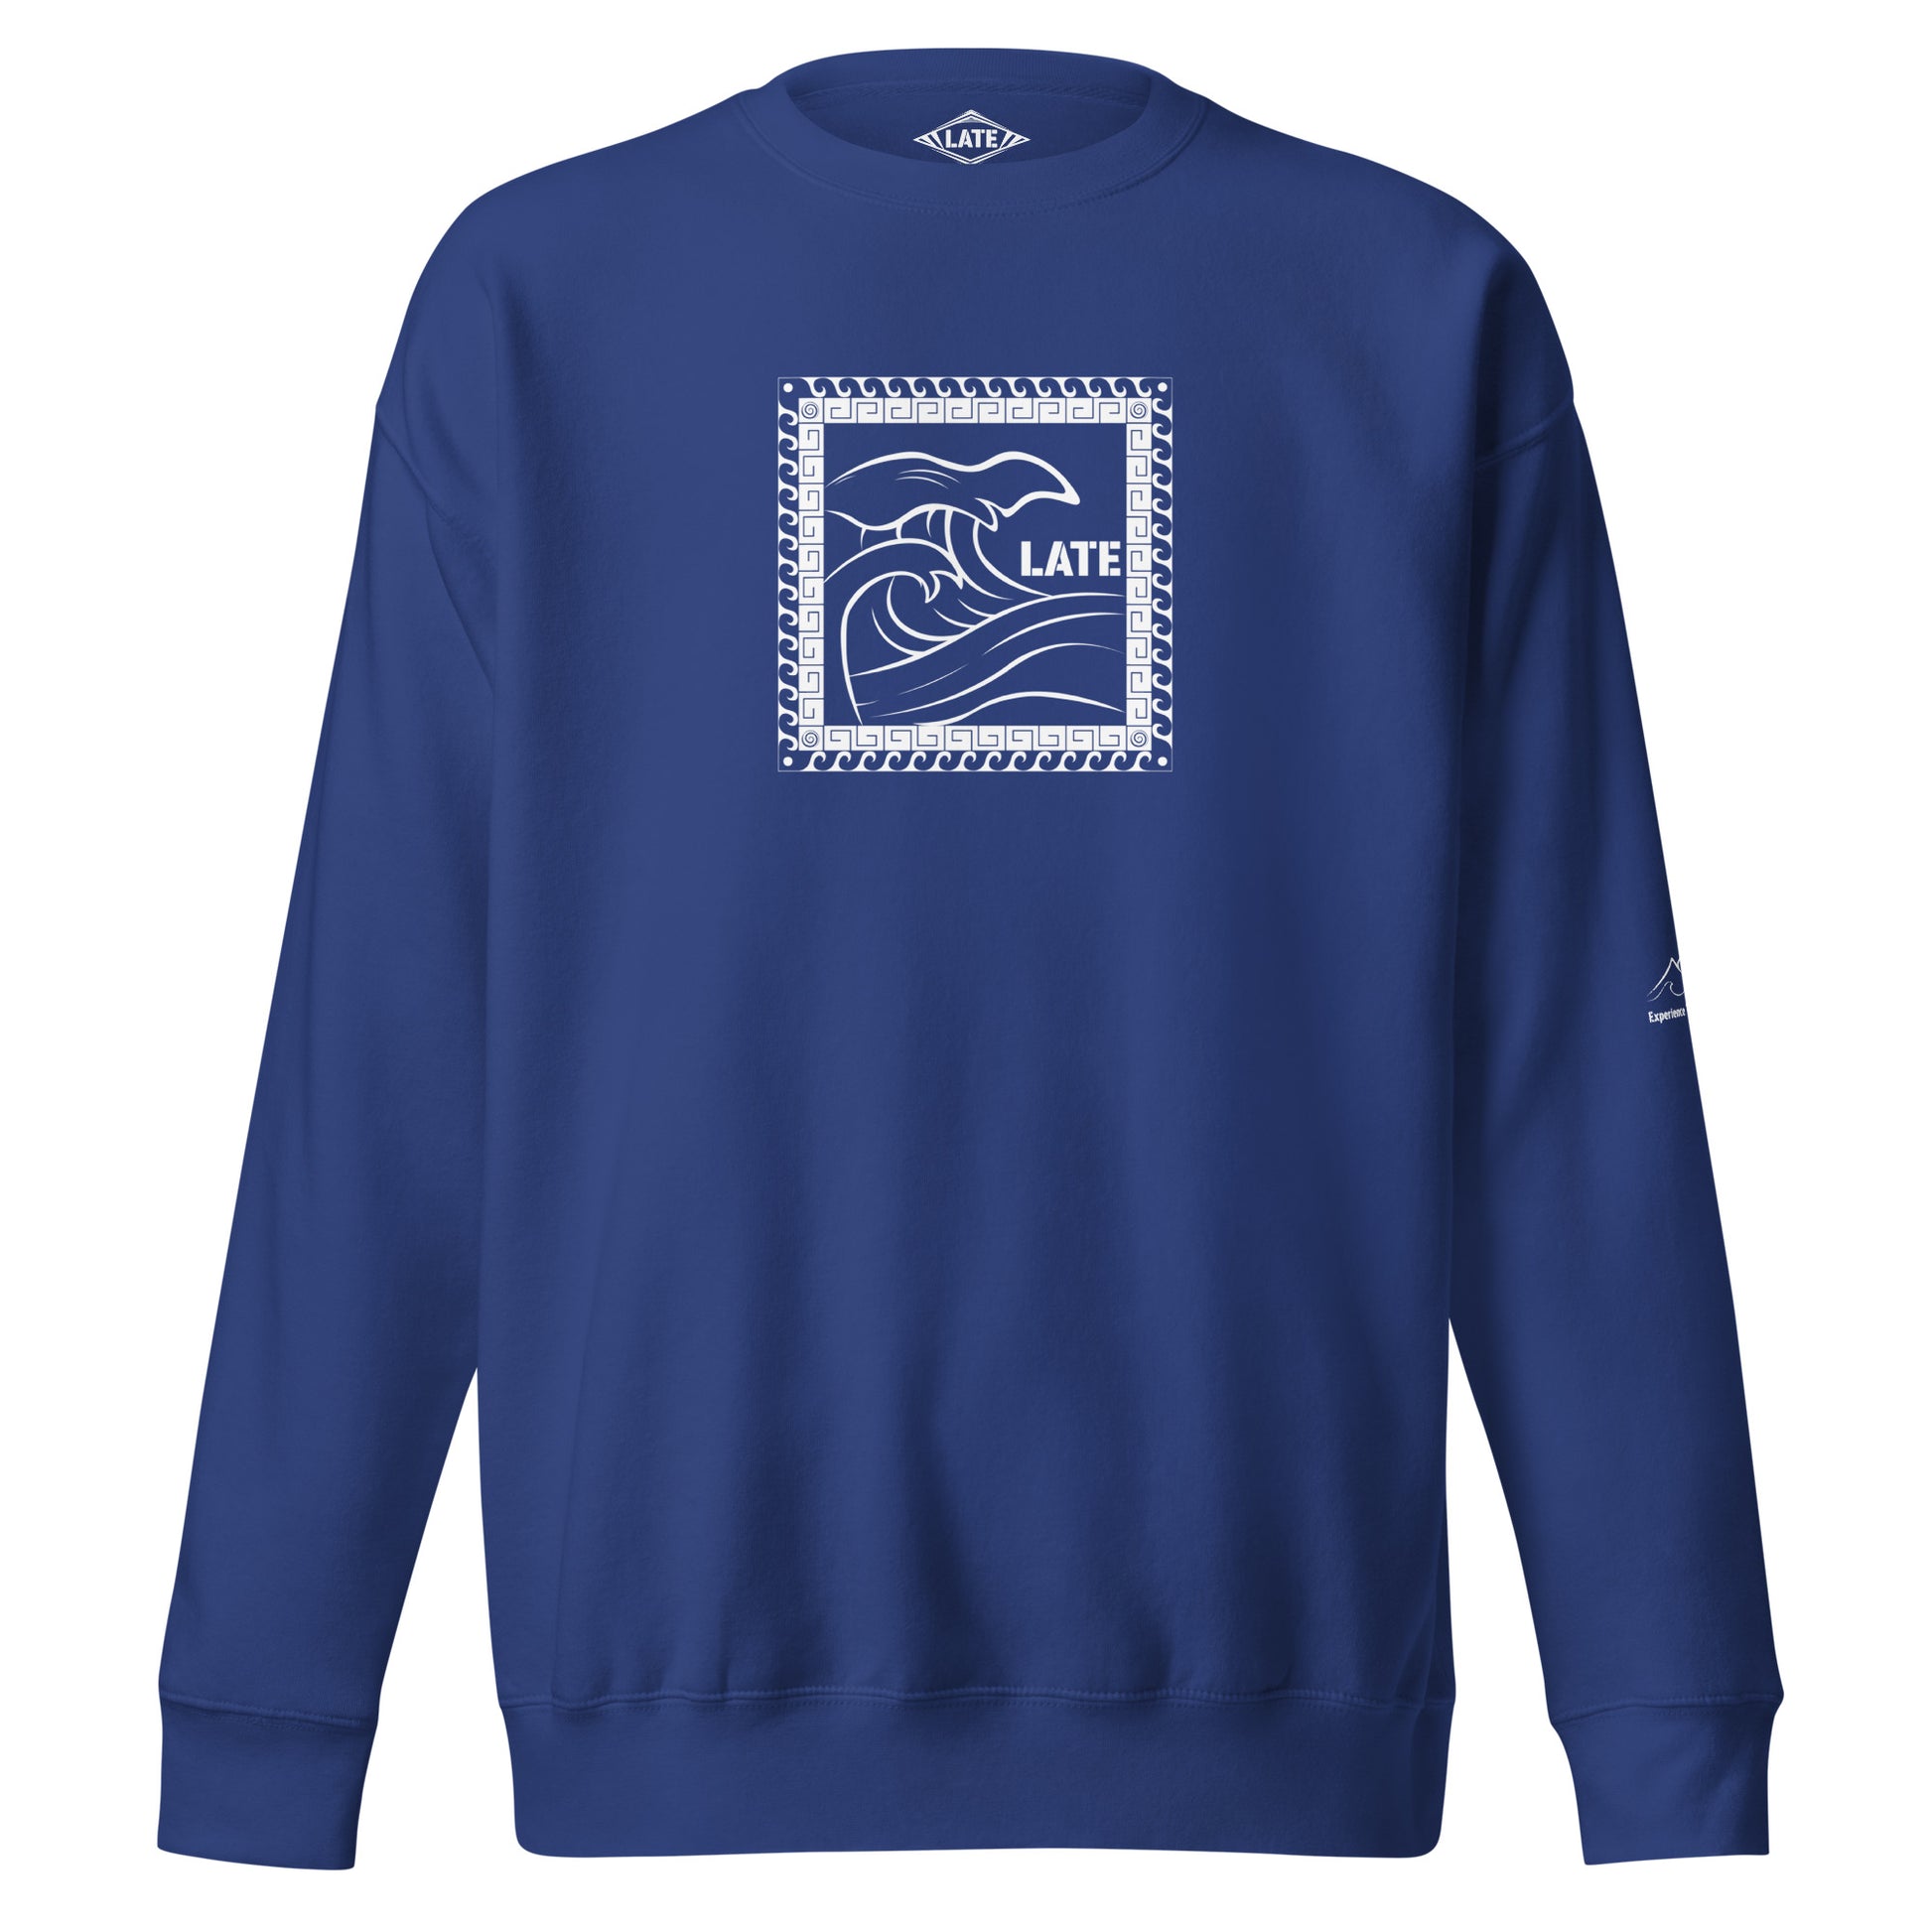 Sweatshirt surf Tricky Wave maori vague japonaise, sweat unisex couleur bleu